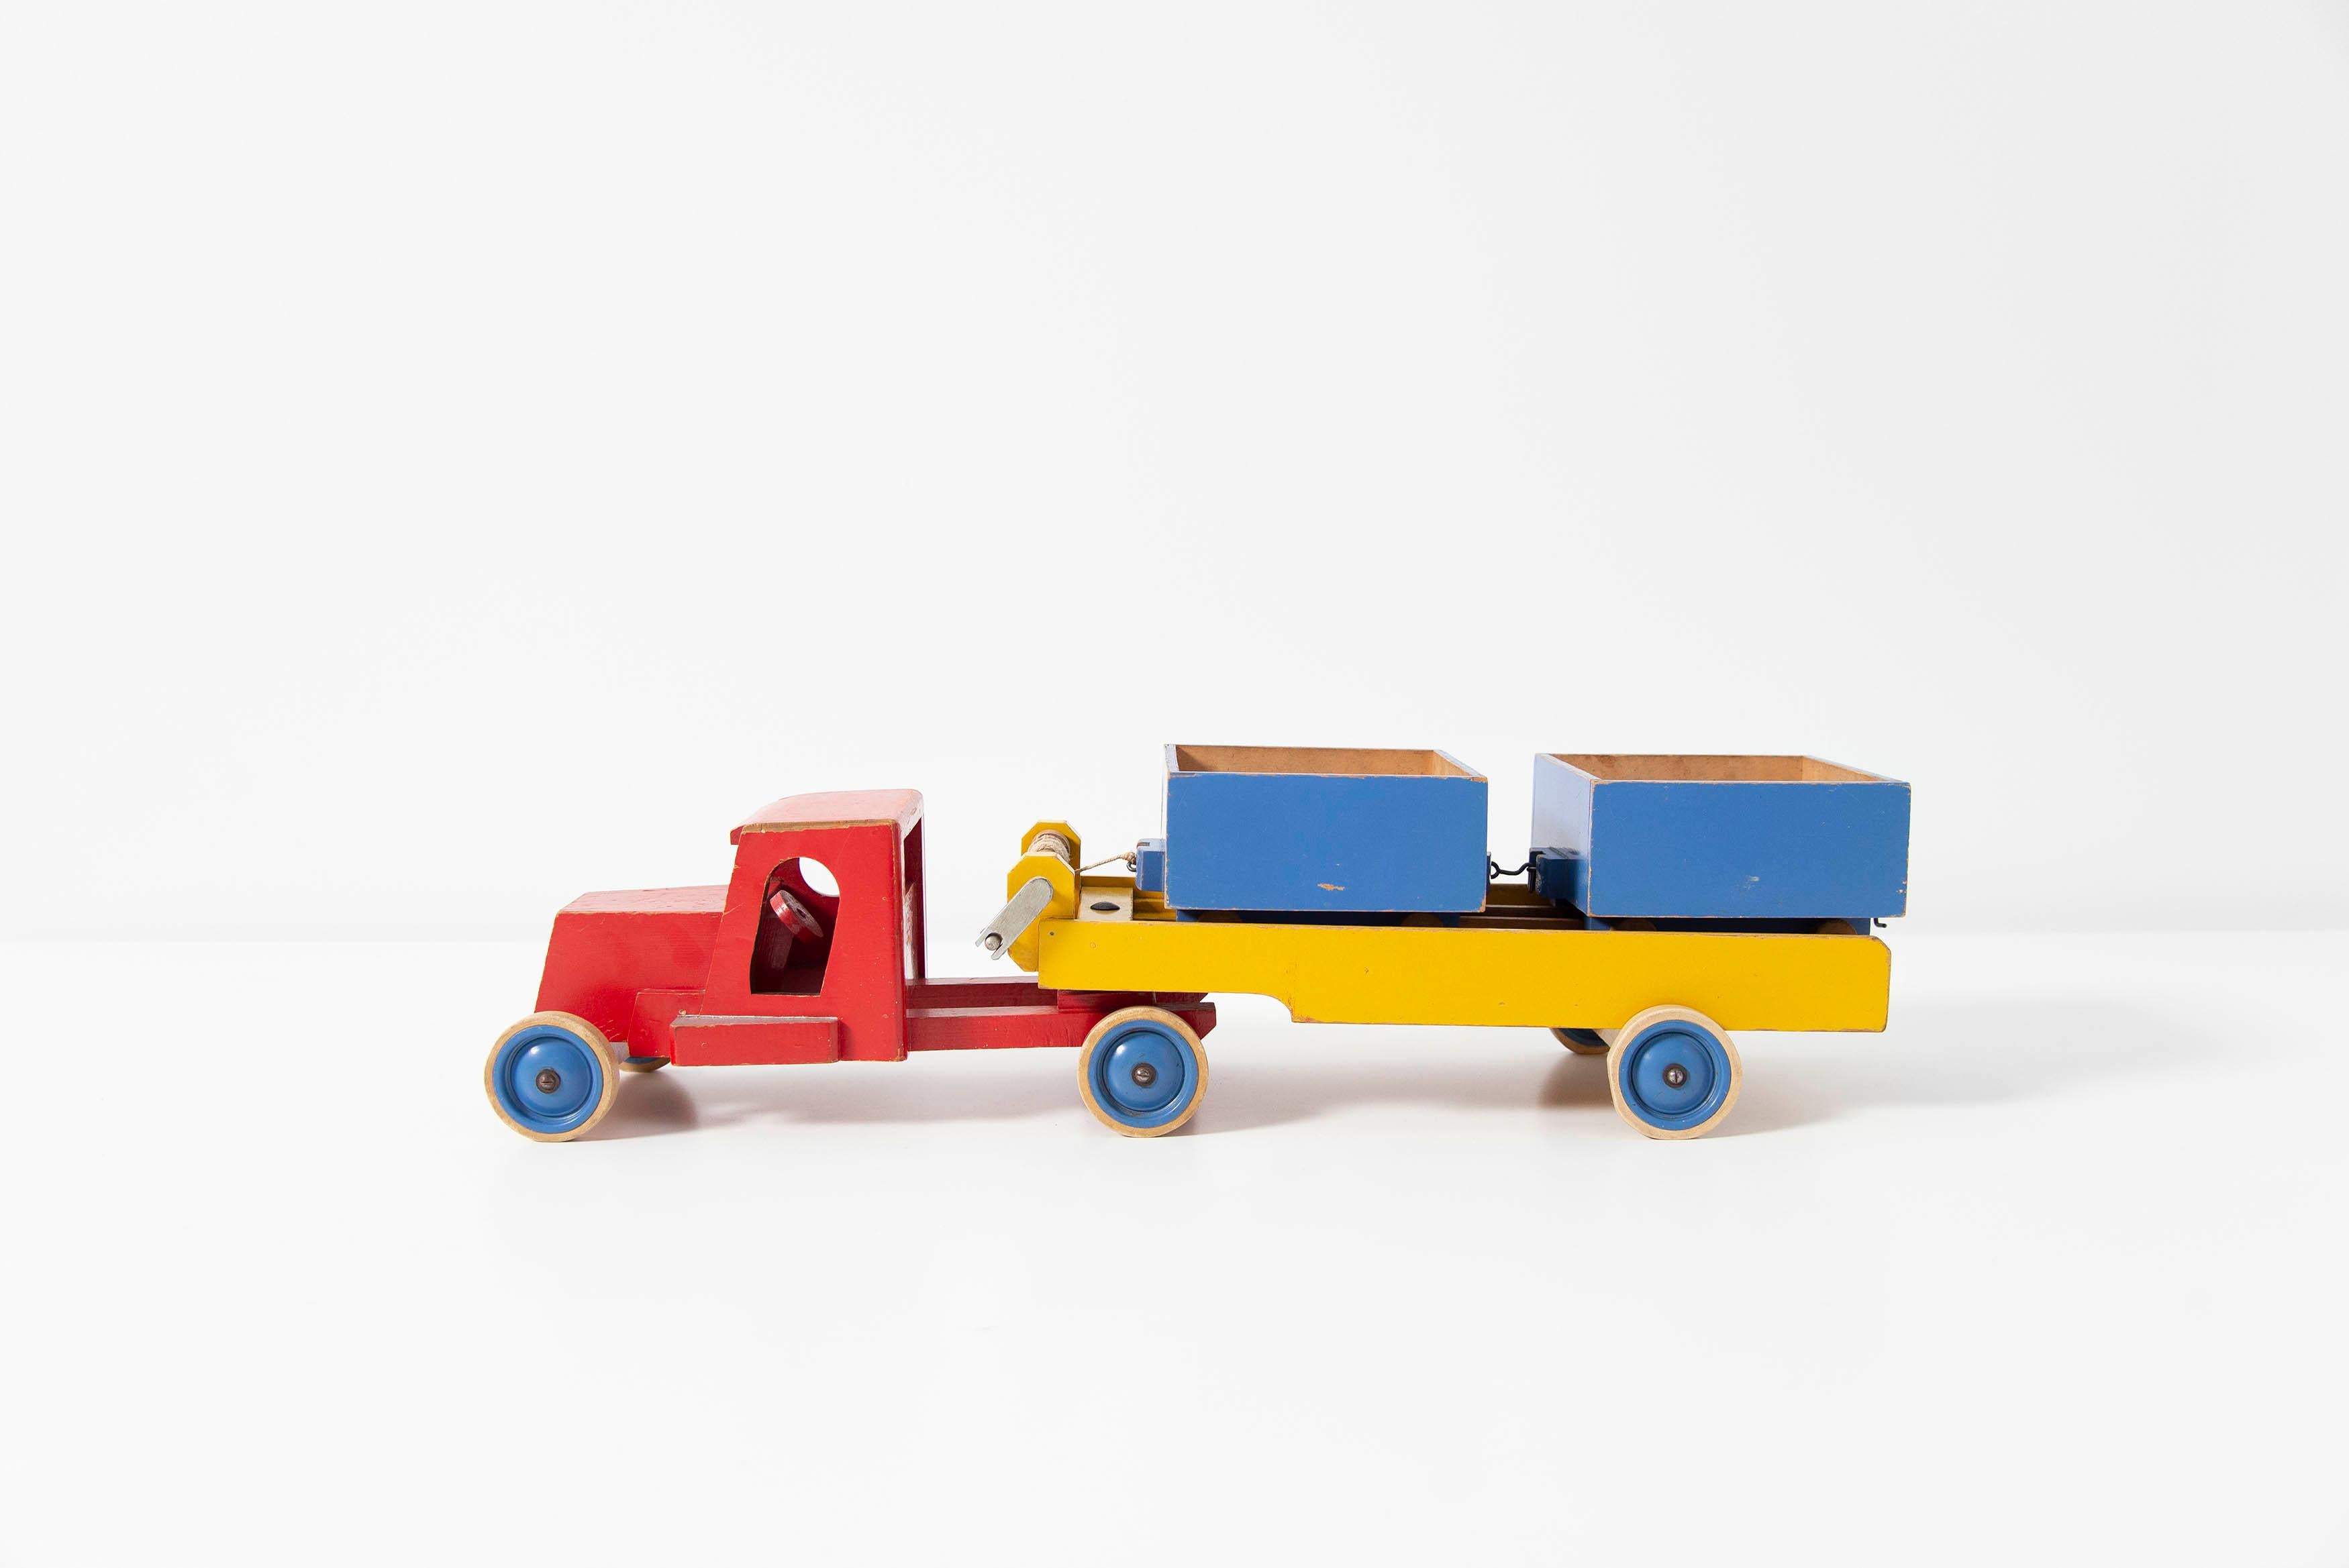 Rare grand camion jouet de collection conçu par Ko Verzuu pour Ado Holland en 1950. Ado signifie Arbeid door onvolwaardigen, c'est-à-dire travail par incapacité, ce qui rend cette pièce encore plus spéciale. Les Collectionals by Ado sont très